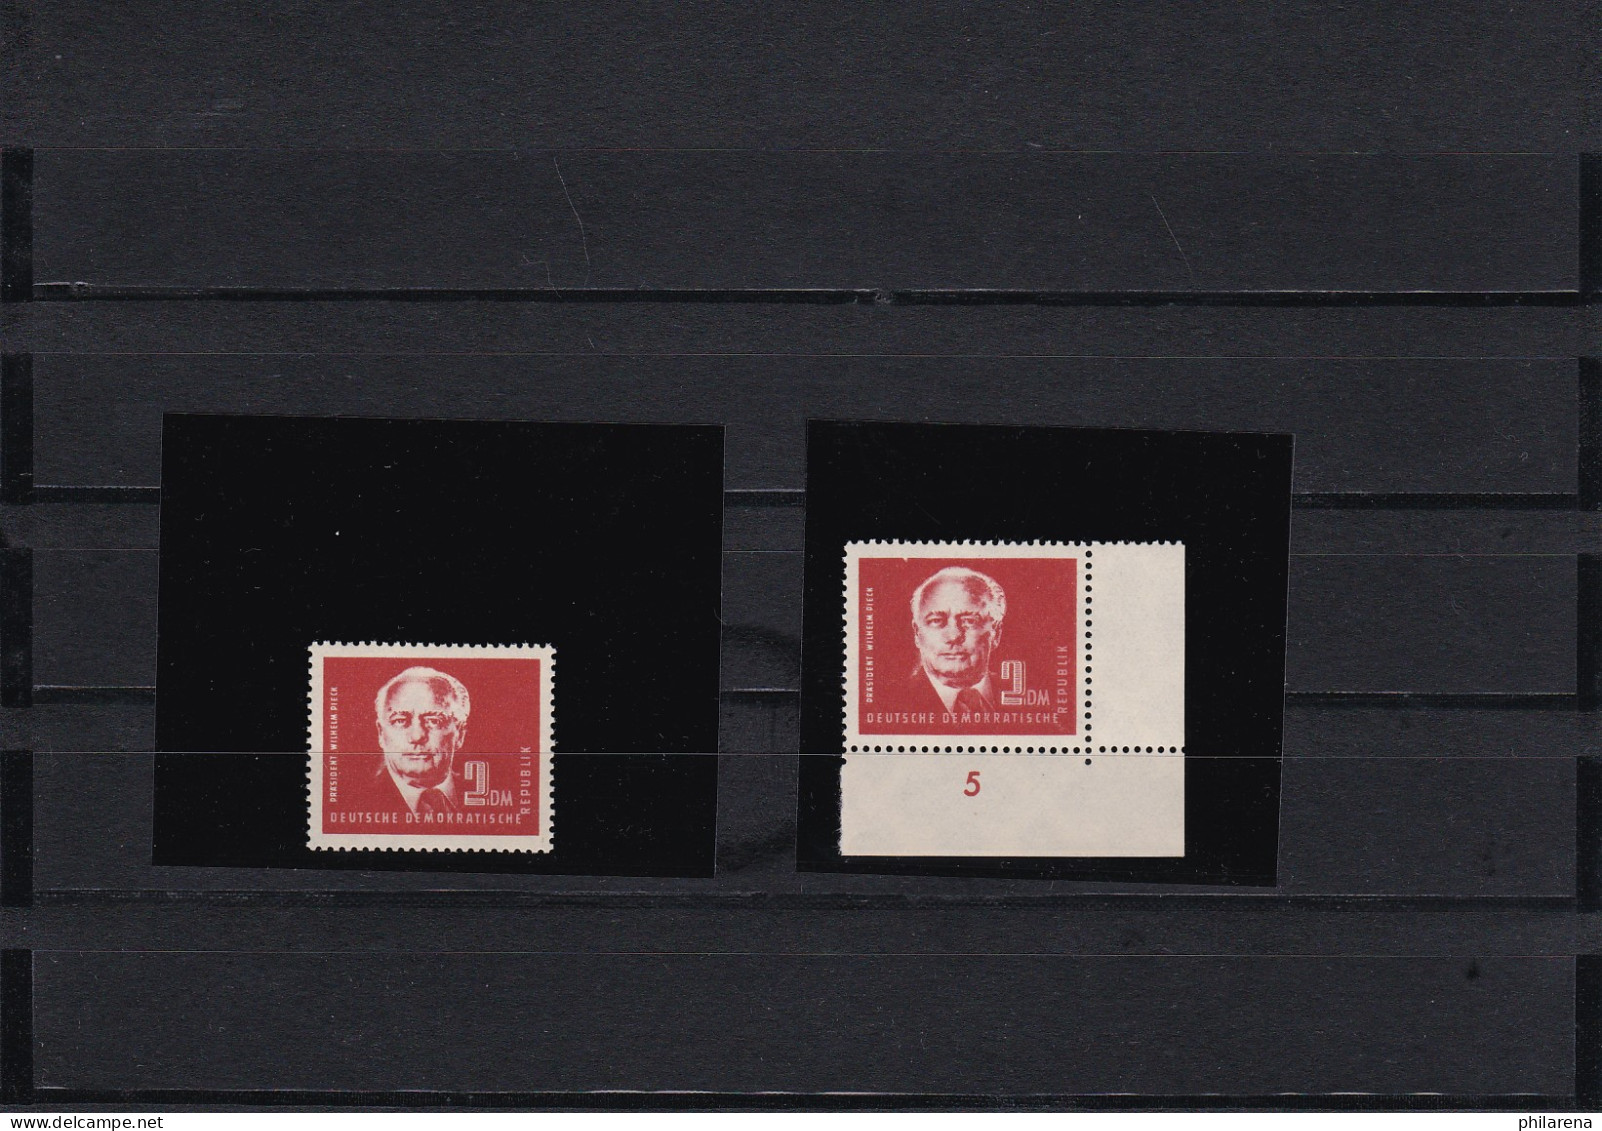 DDR: MiNr. 254 Cc I Und 254 CcII, Beide Postfrisch, BPP Attest - Unused Stamps